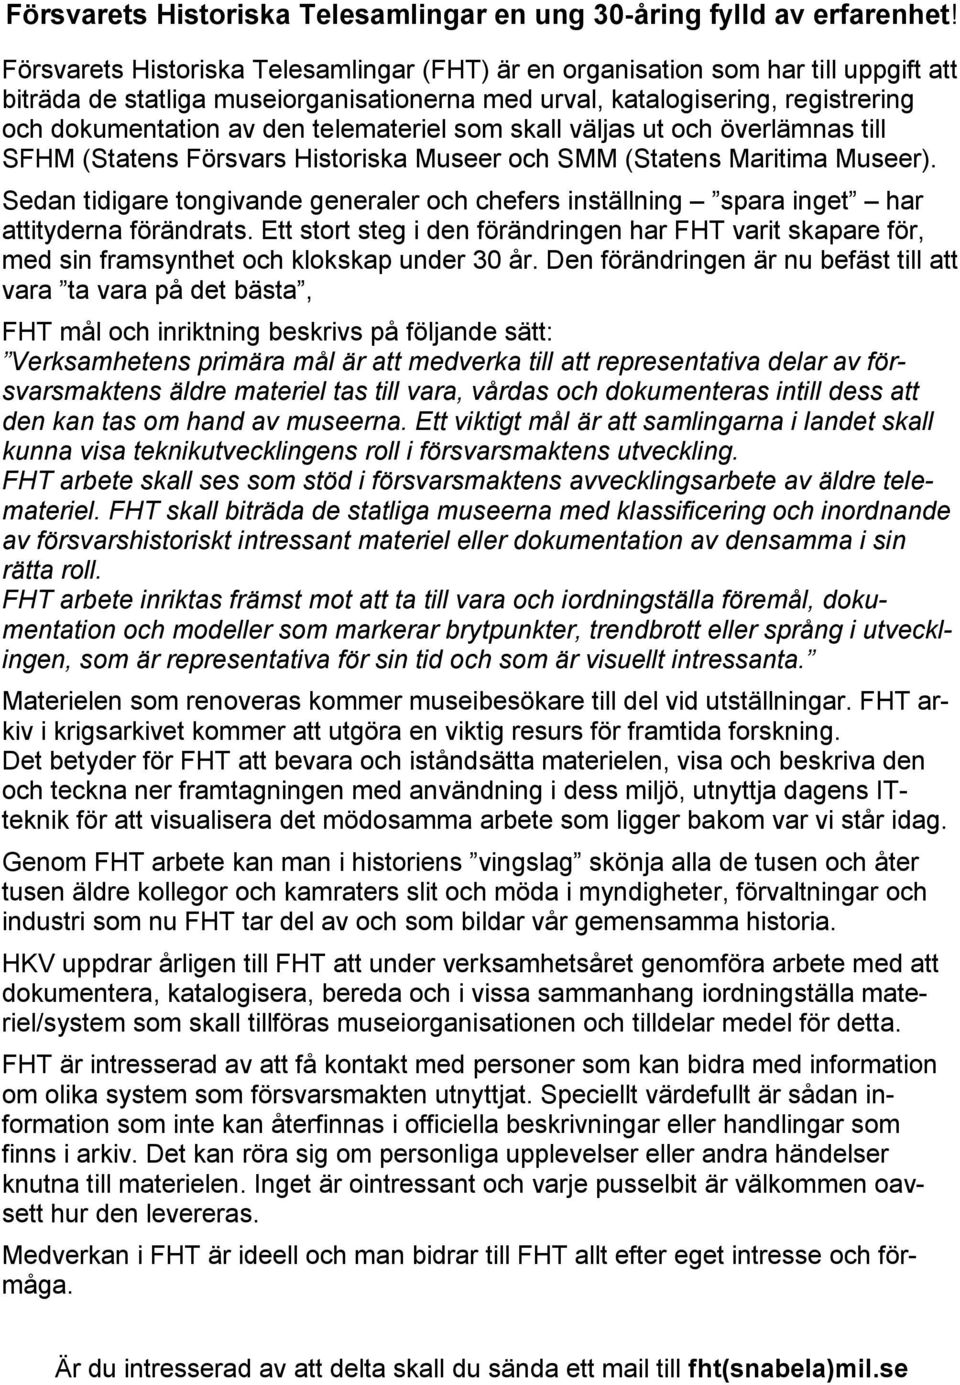 telemateriel som skall väljas ut och överlämnas till SFHM (Statens Försvars Historiska Museer och SMM (Statens Maritima Museer).